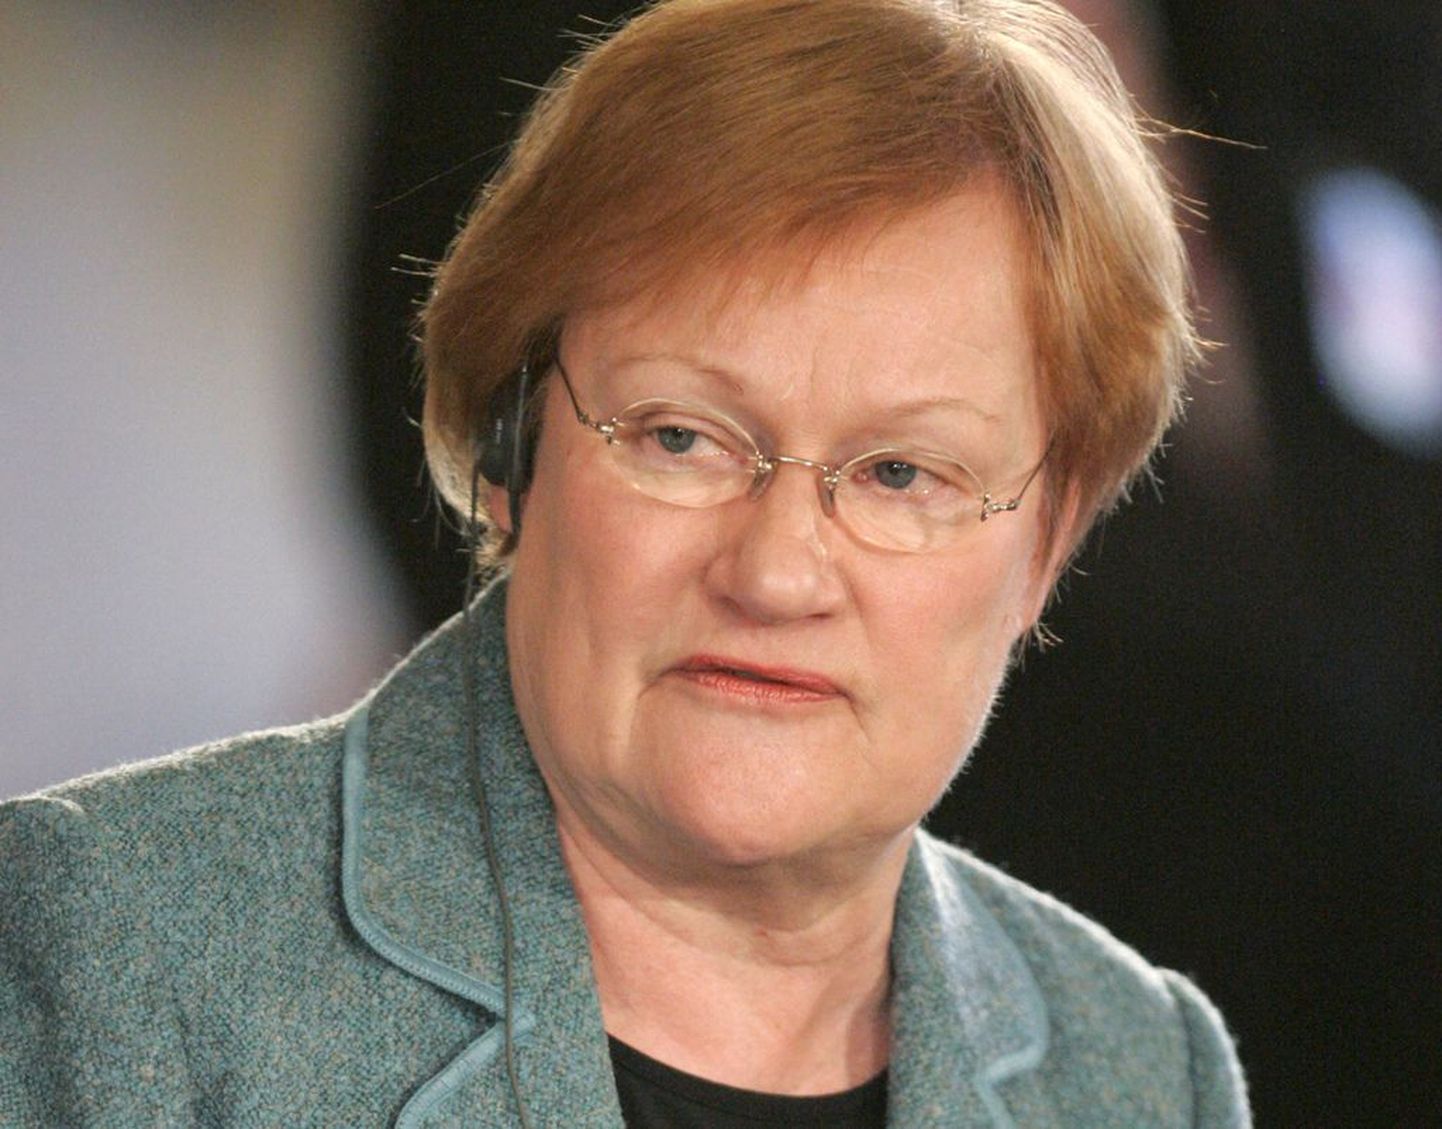 Soome president Tarja Halonen. .